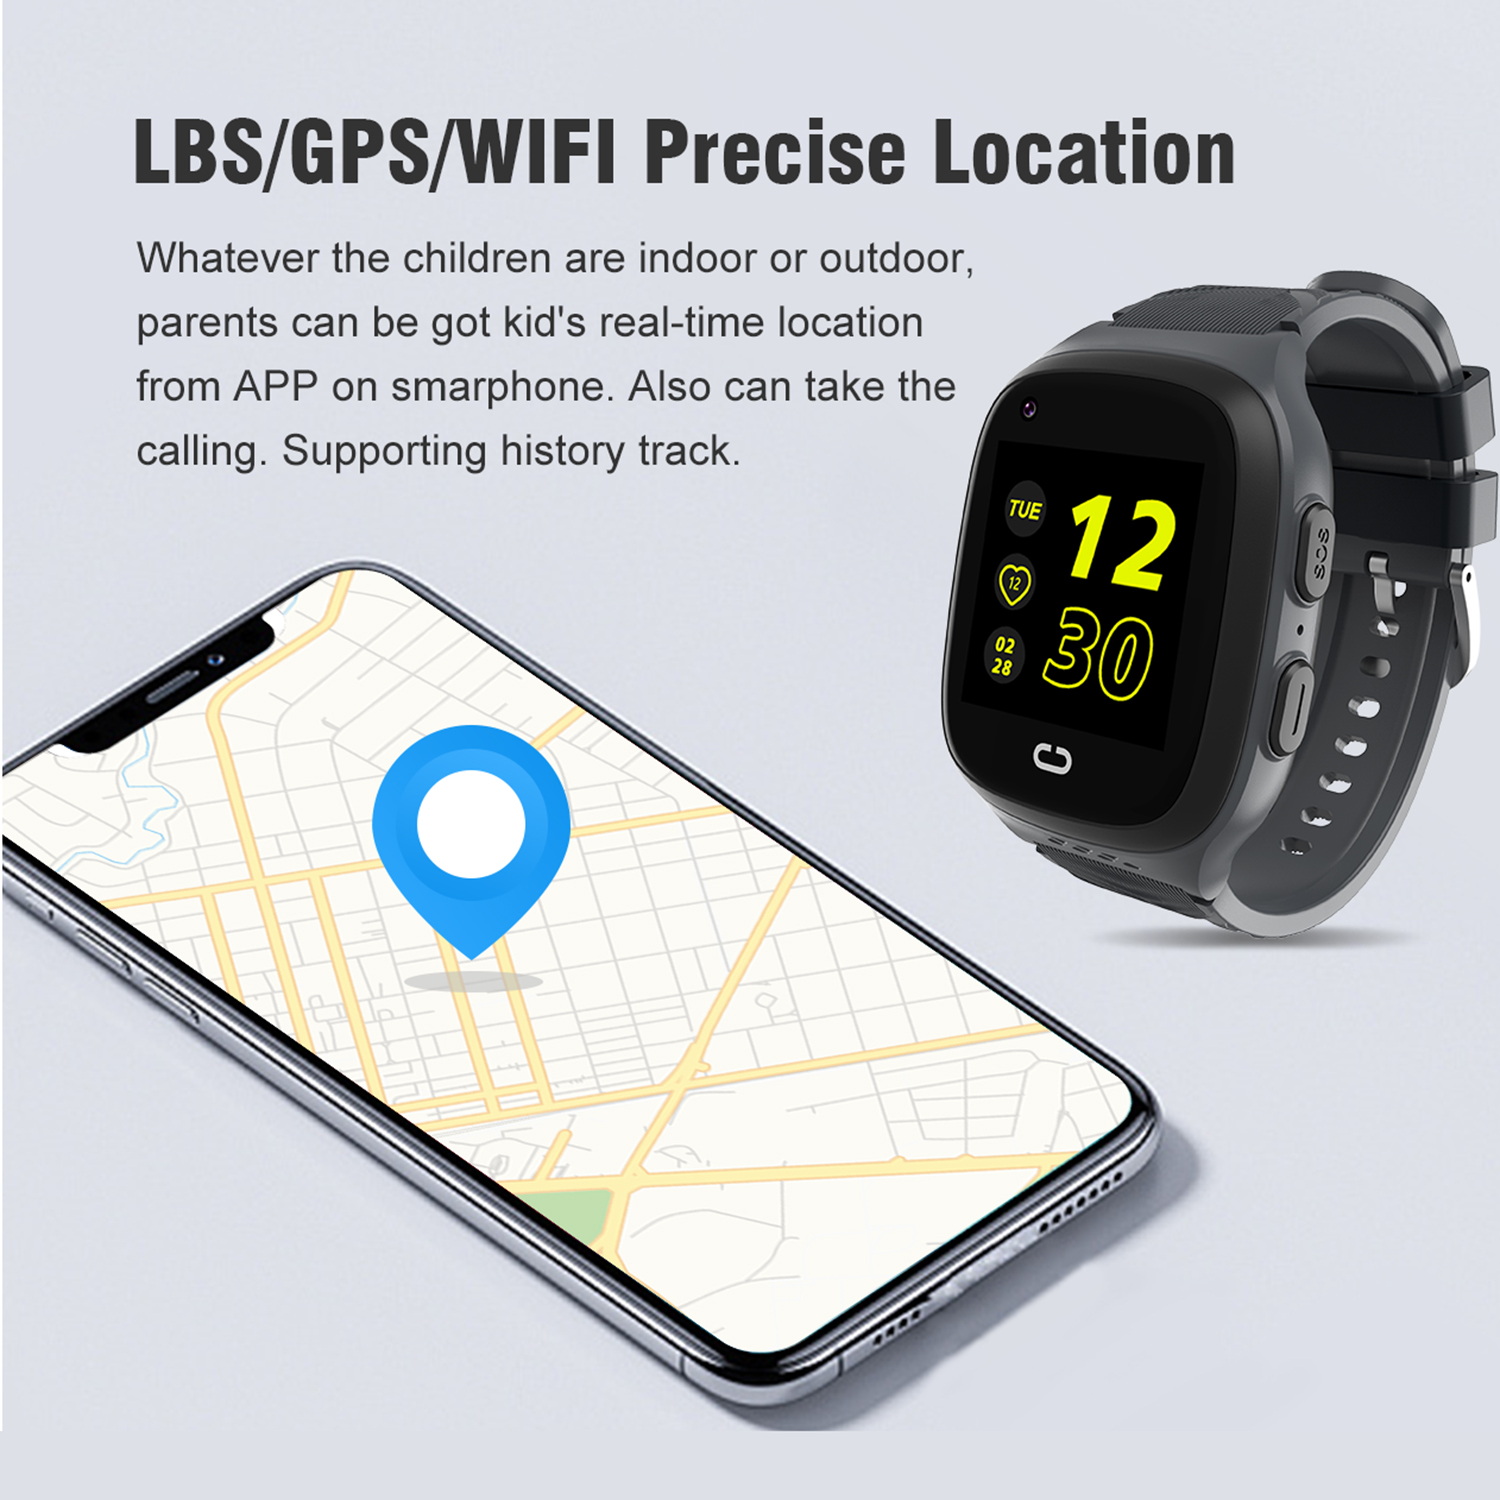 LTE Waterproof security Kids Women Smart Watch GPS Tracker D58